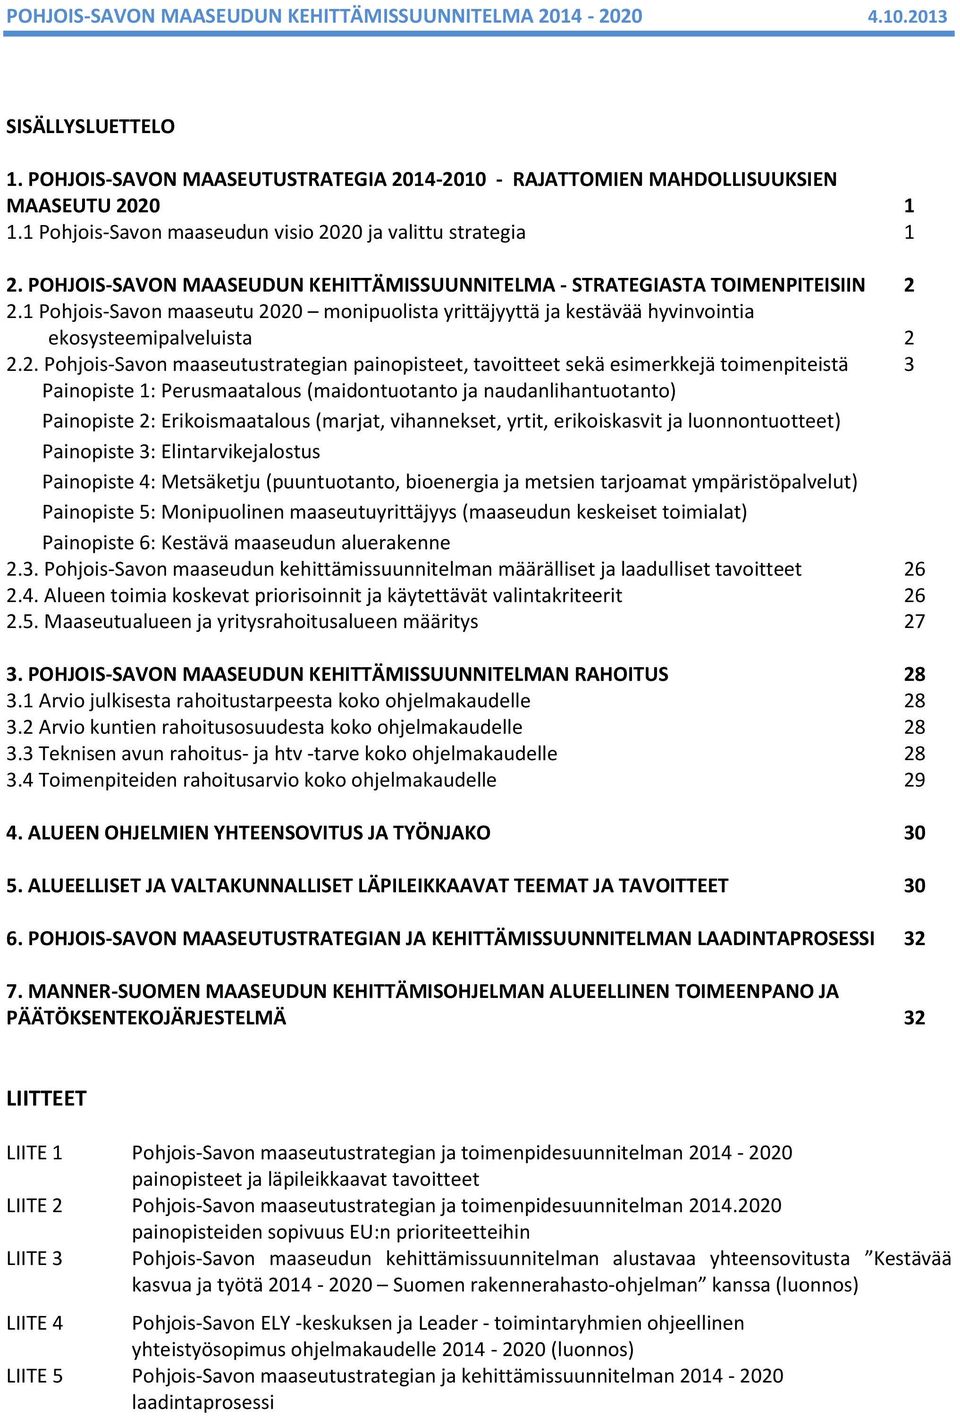 2.1 Pohjois-Savon maaseutu 2020 monipuolista yrittäjyyttä ja kestävää hyvinvointia ekosysteemipalveluista 2 2.2. Pohjois-Savon maaseutustrategian painopisteet, tavoitteet sekä esimerkkejä